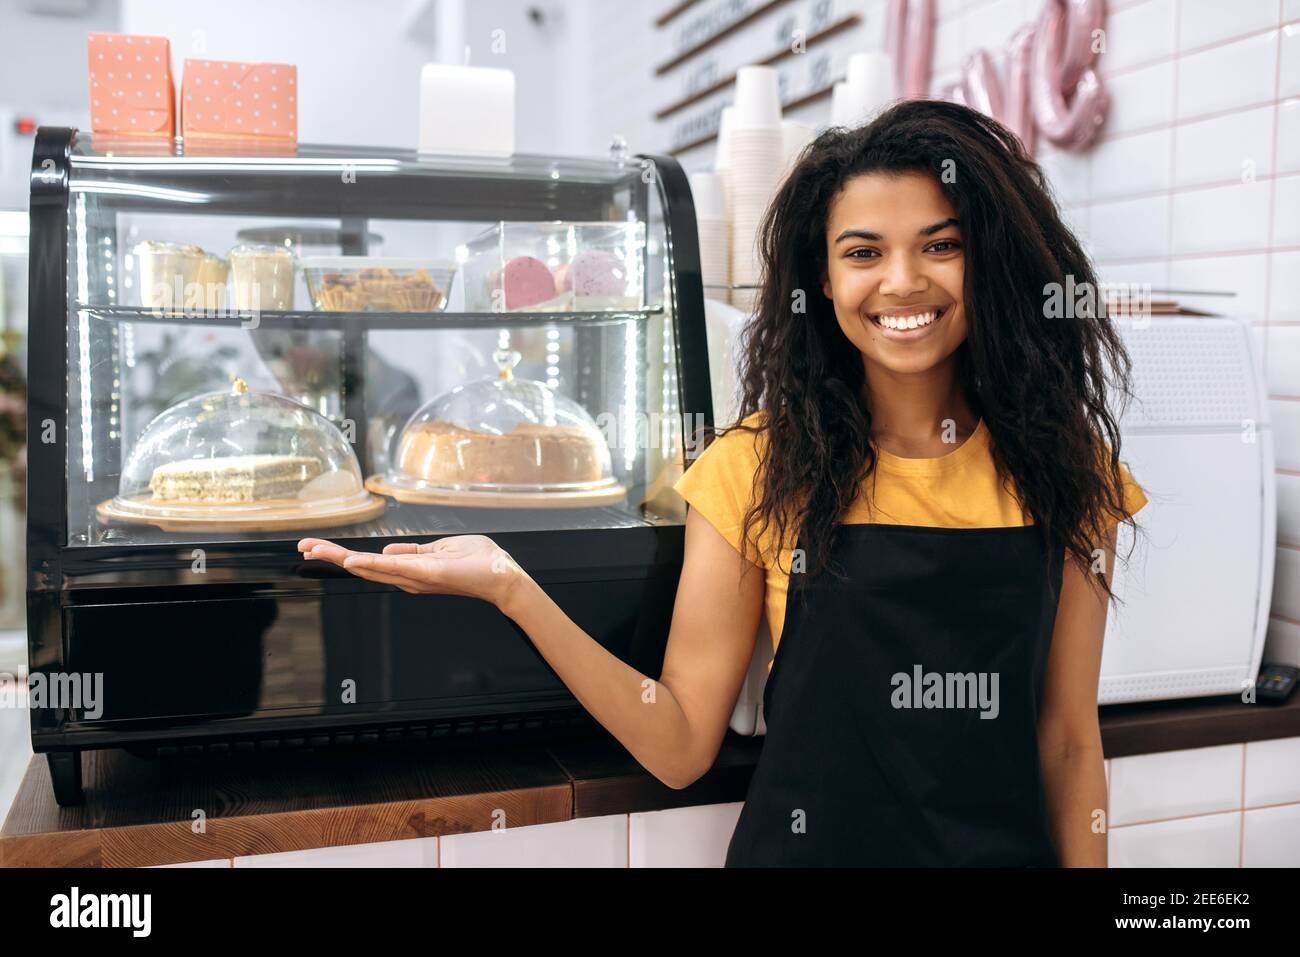 Freundliches afroamerikanisches Mädchen, Kellnerin oder Geschäftsinhaberin, steht in einem Café in der Nähe von Desserts, zeigt auf sie, schaut und lächelt auf die Kamera Stockfoto